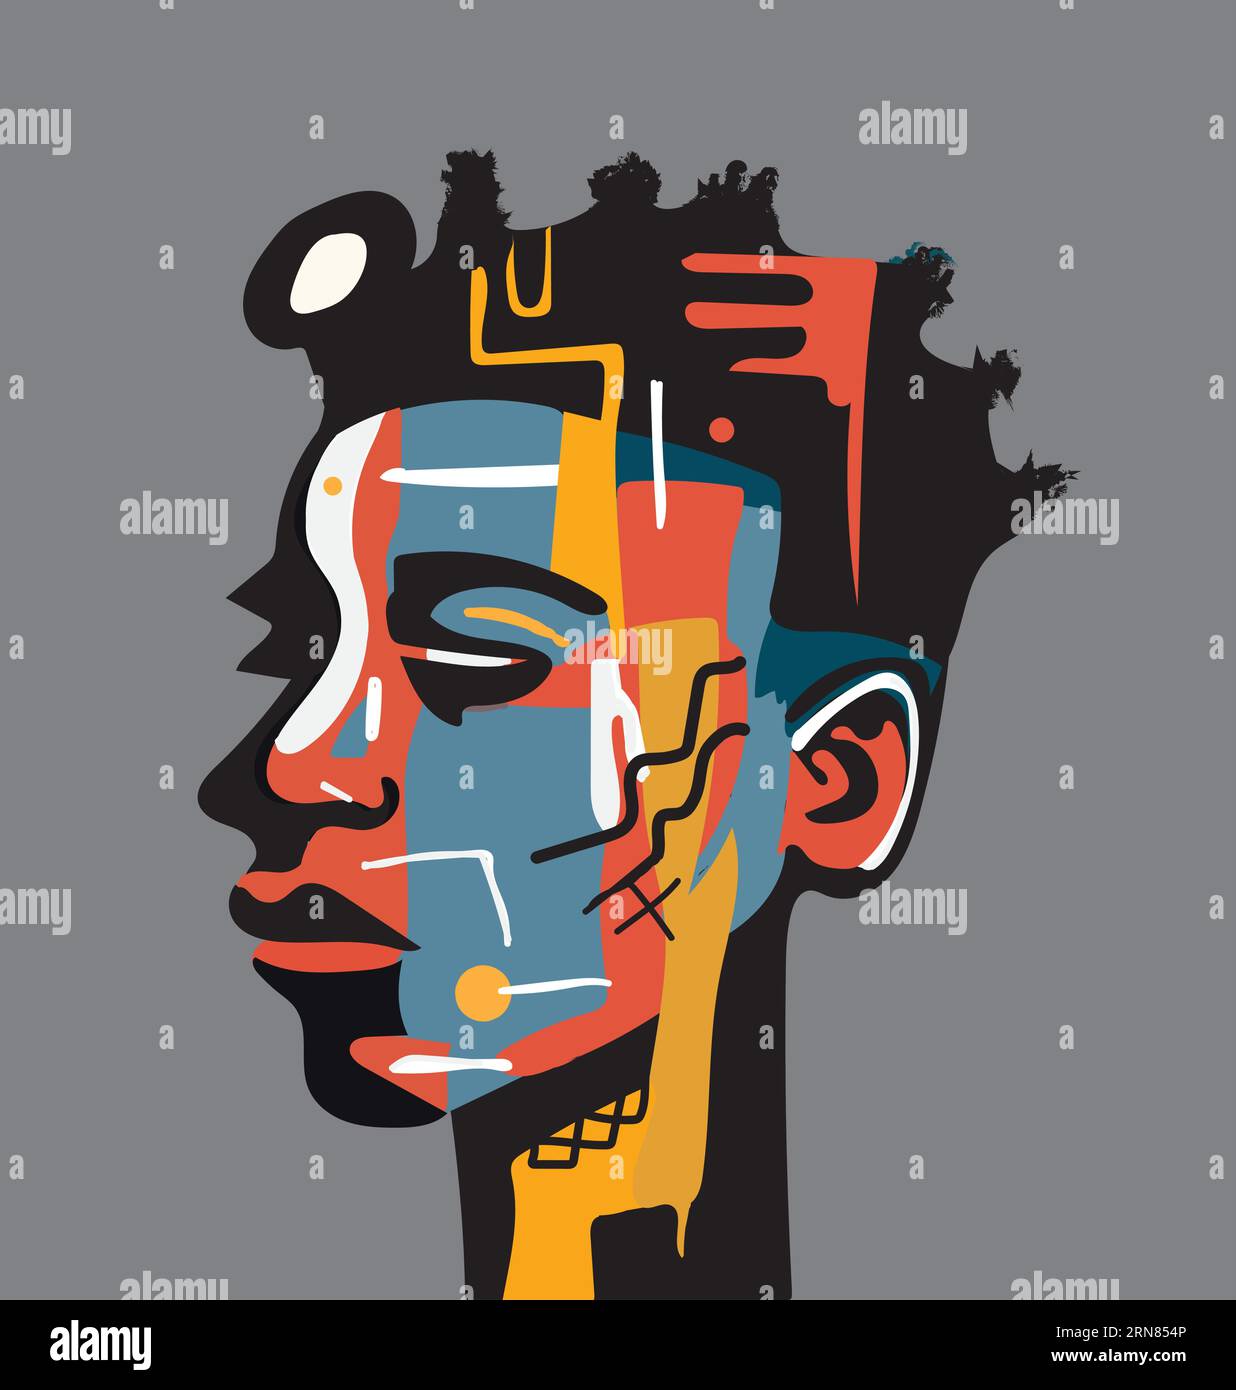 Portrait abstrait d'un visage humain africain, couleurs de bloc, fond gris Illustration de Vecteur